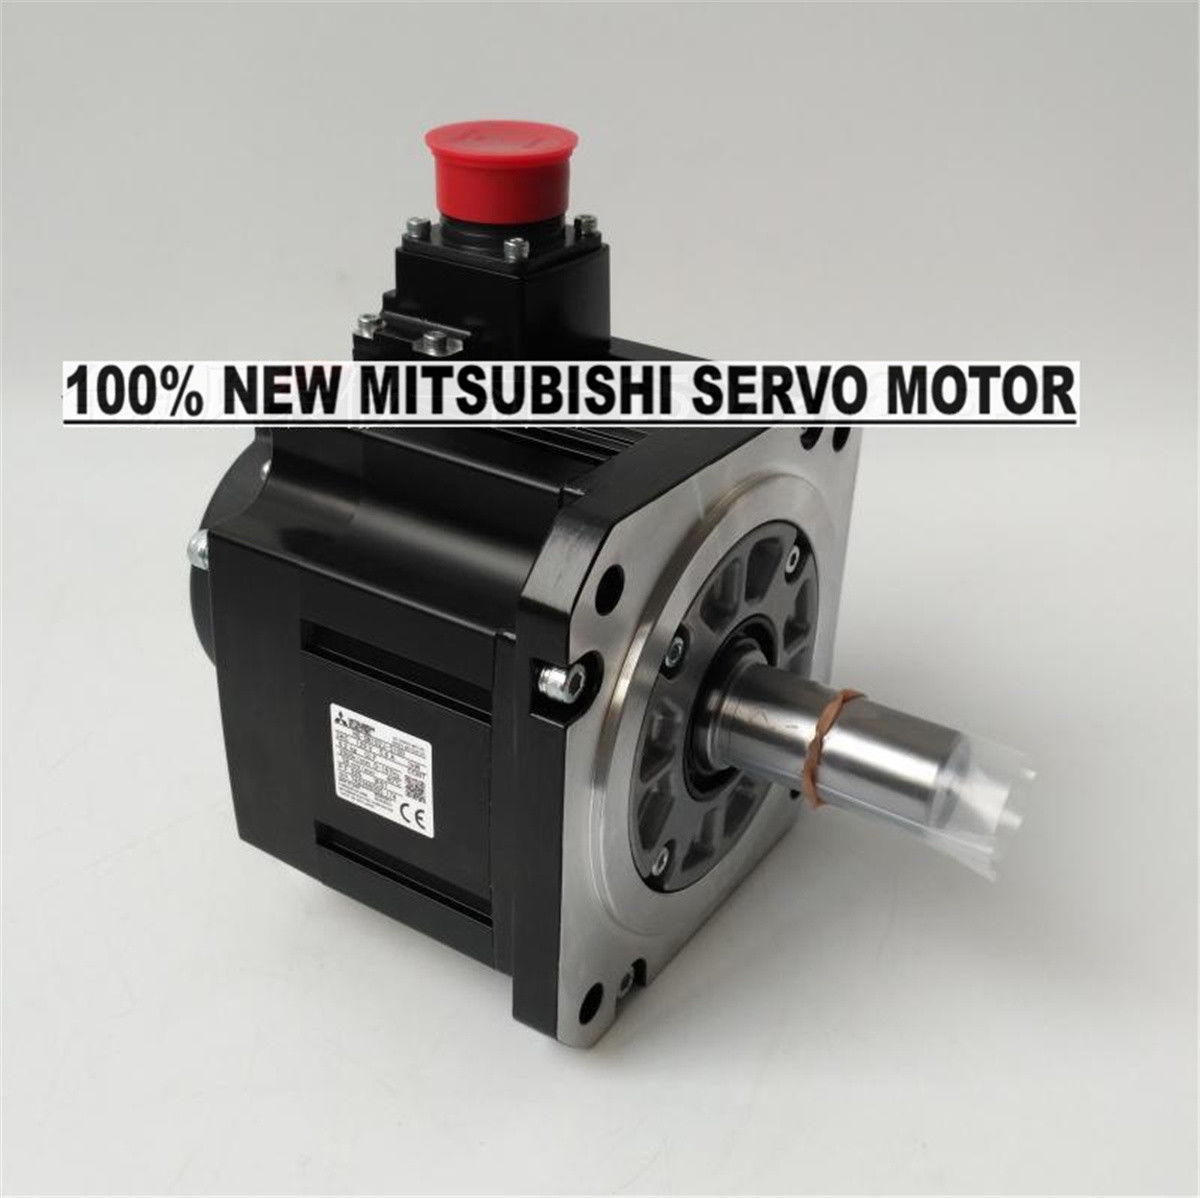 NEW Mitsubishi Servo Motor HG-SN102J-S100 in box HGSN102JS100 - Click Image to Close